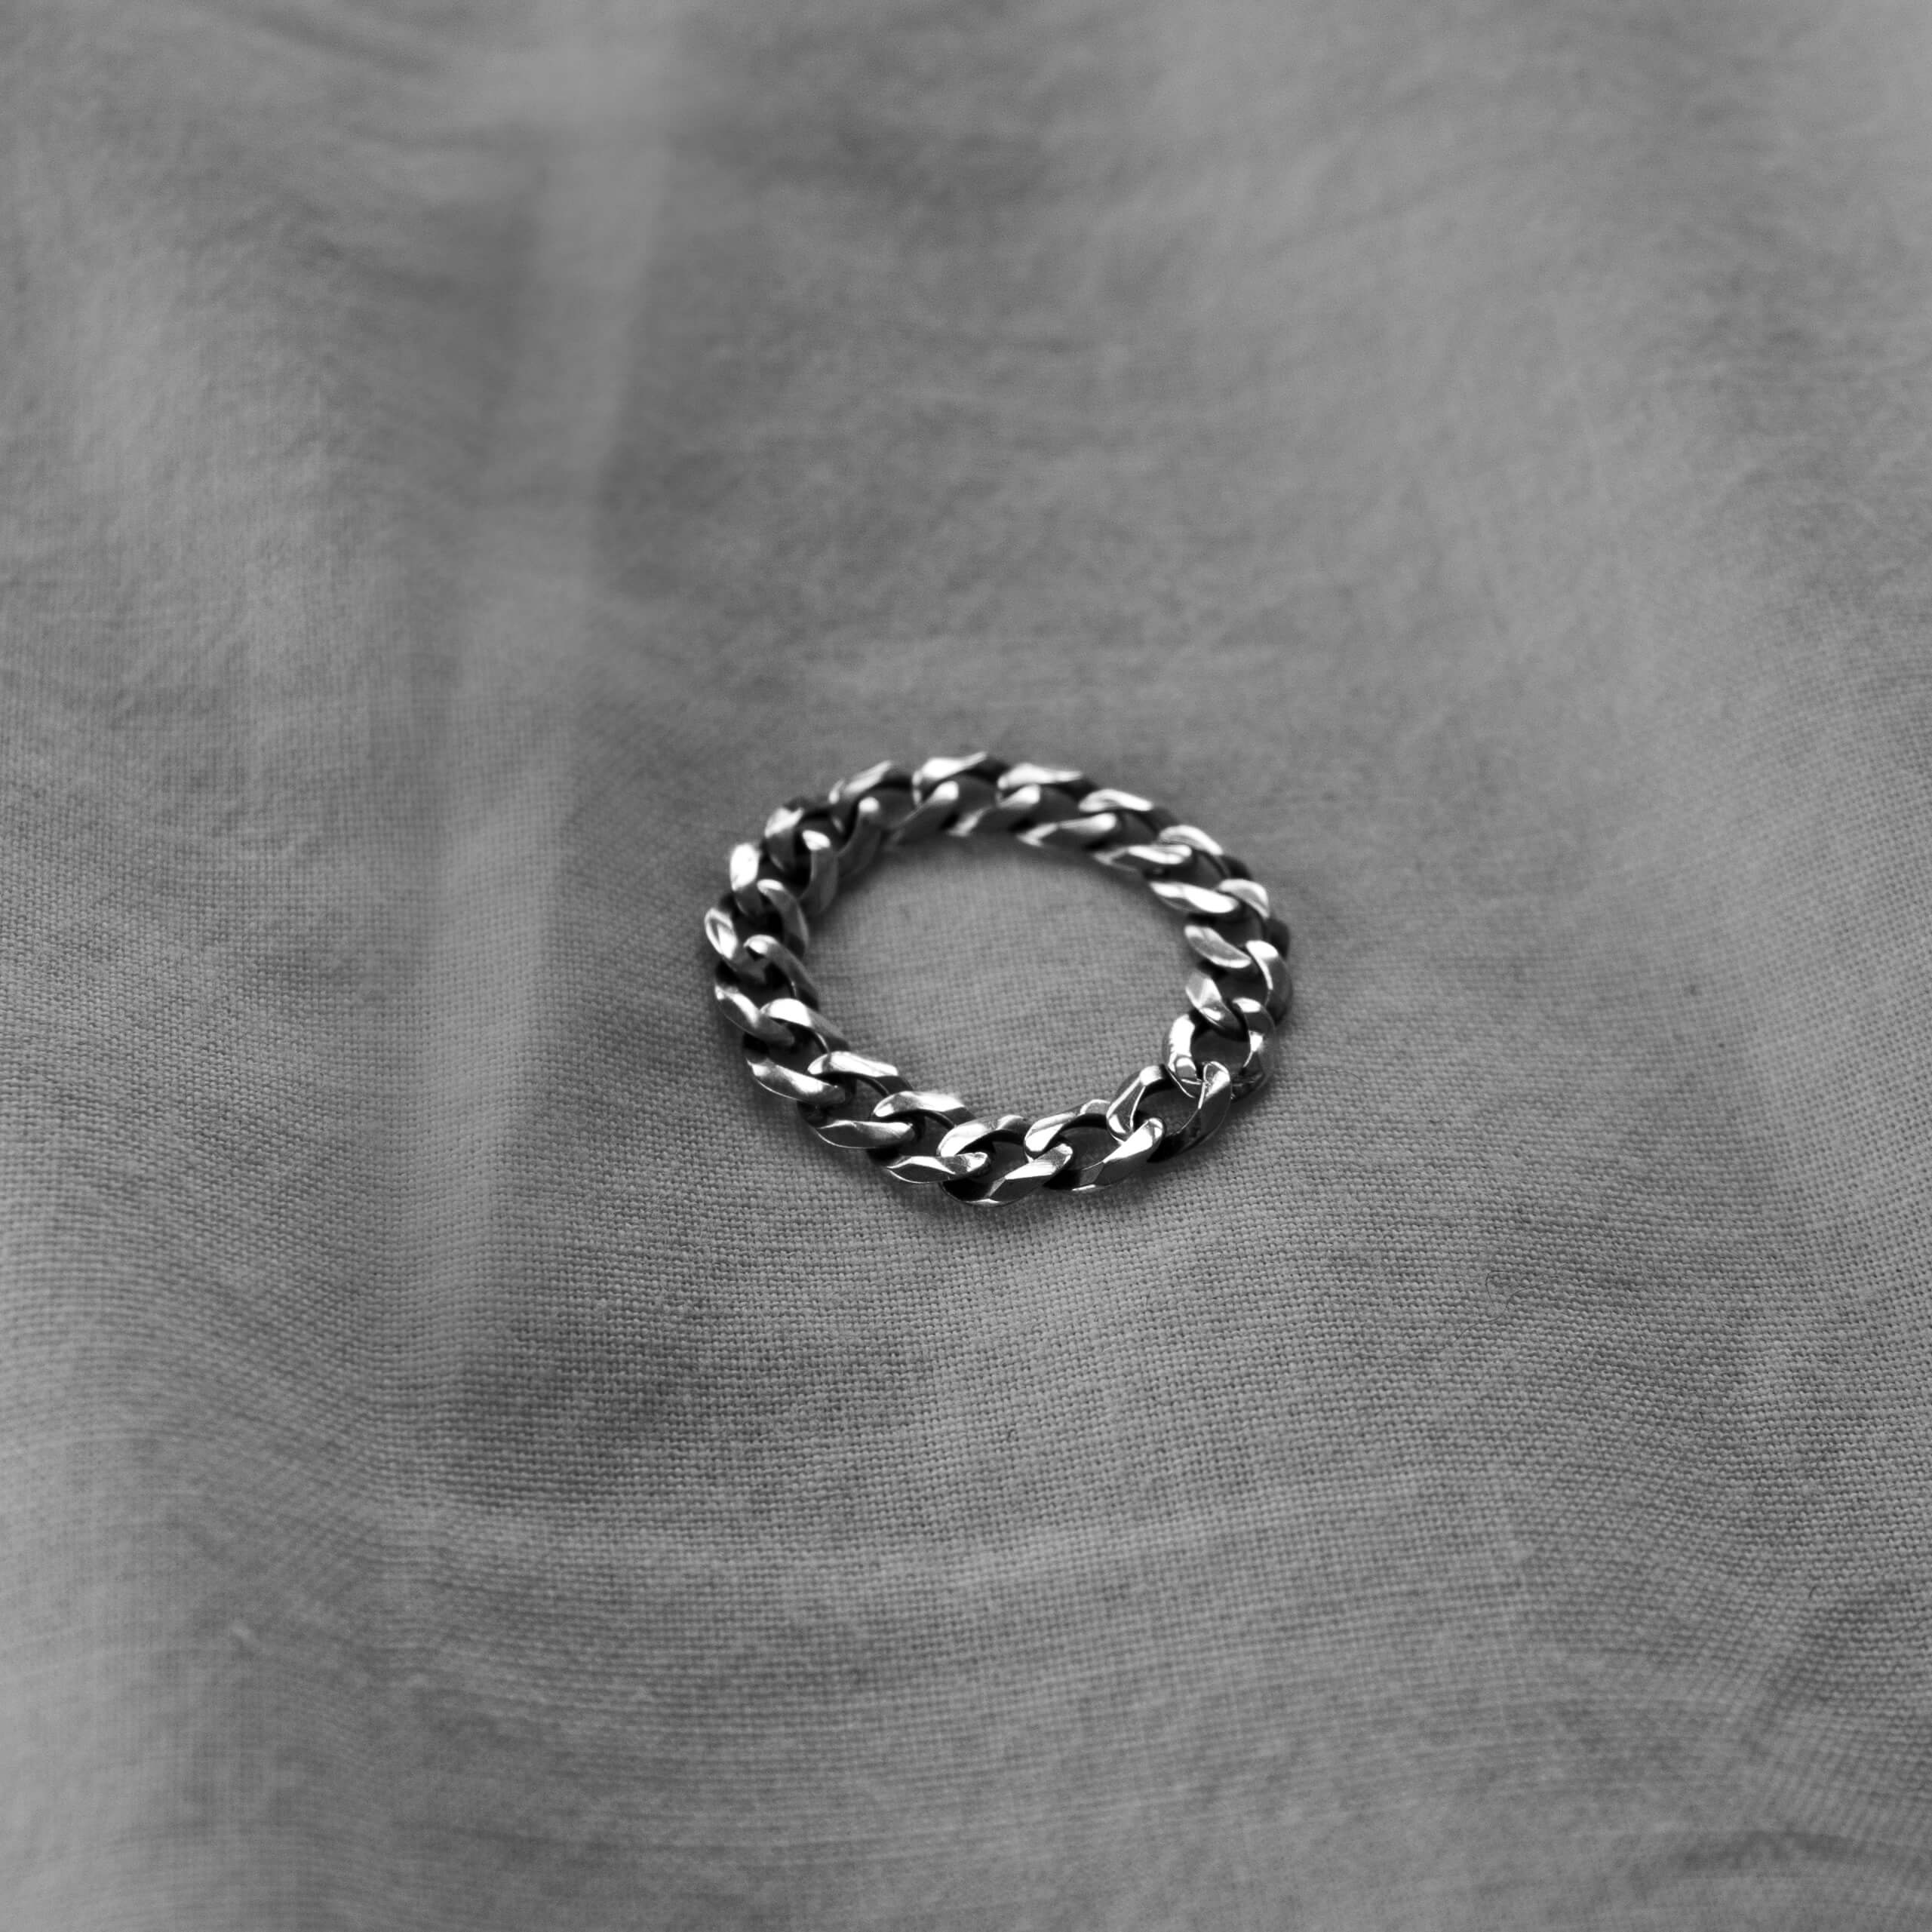 Pierścionek łańcuch ze srebra na jasnym materiale, zdjęcie czarno-białe.